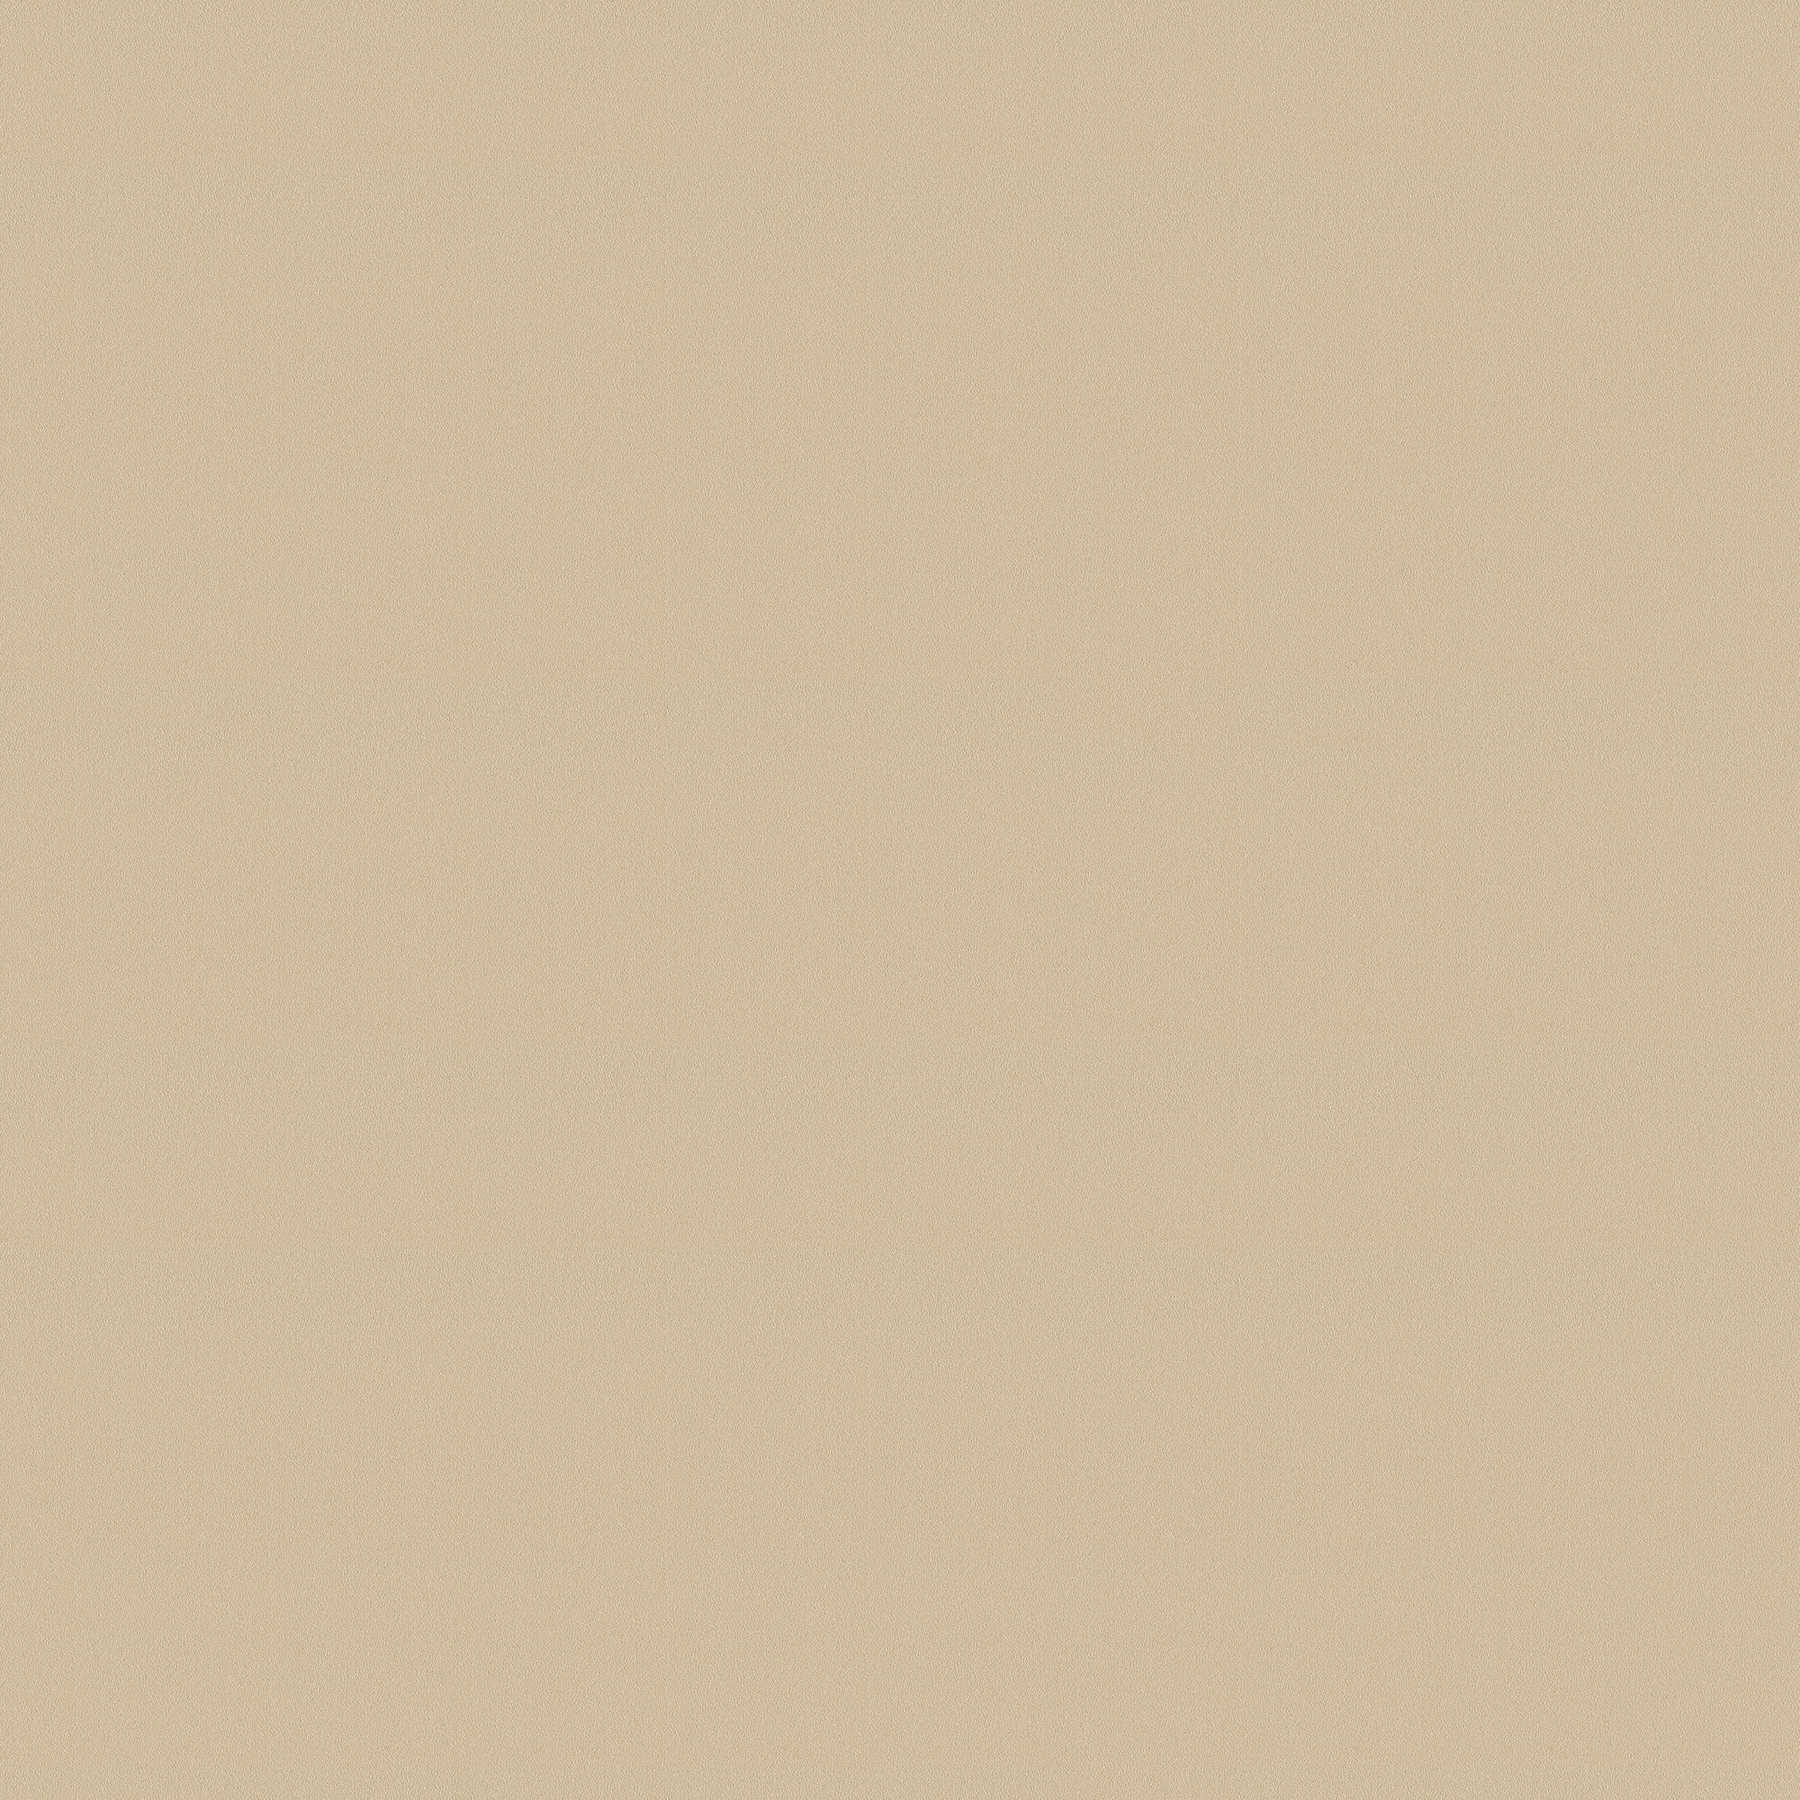 Papier peint uni beige avec motif structuré en aplat
